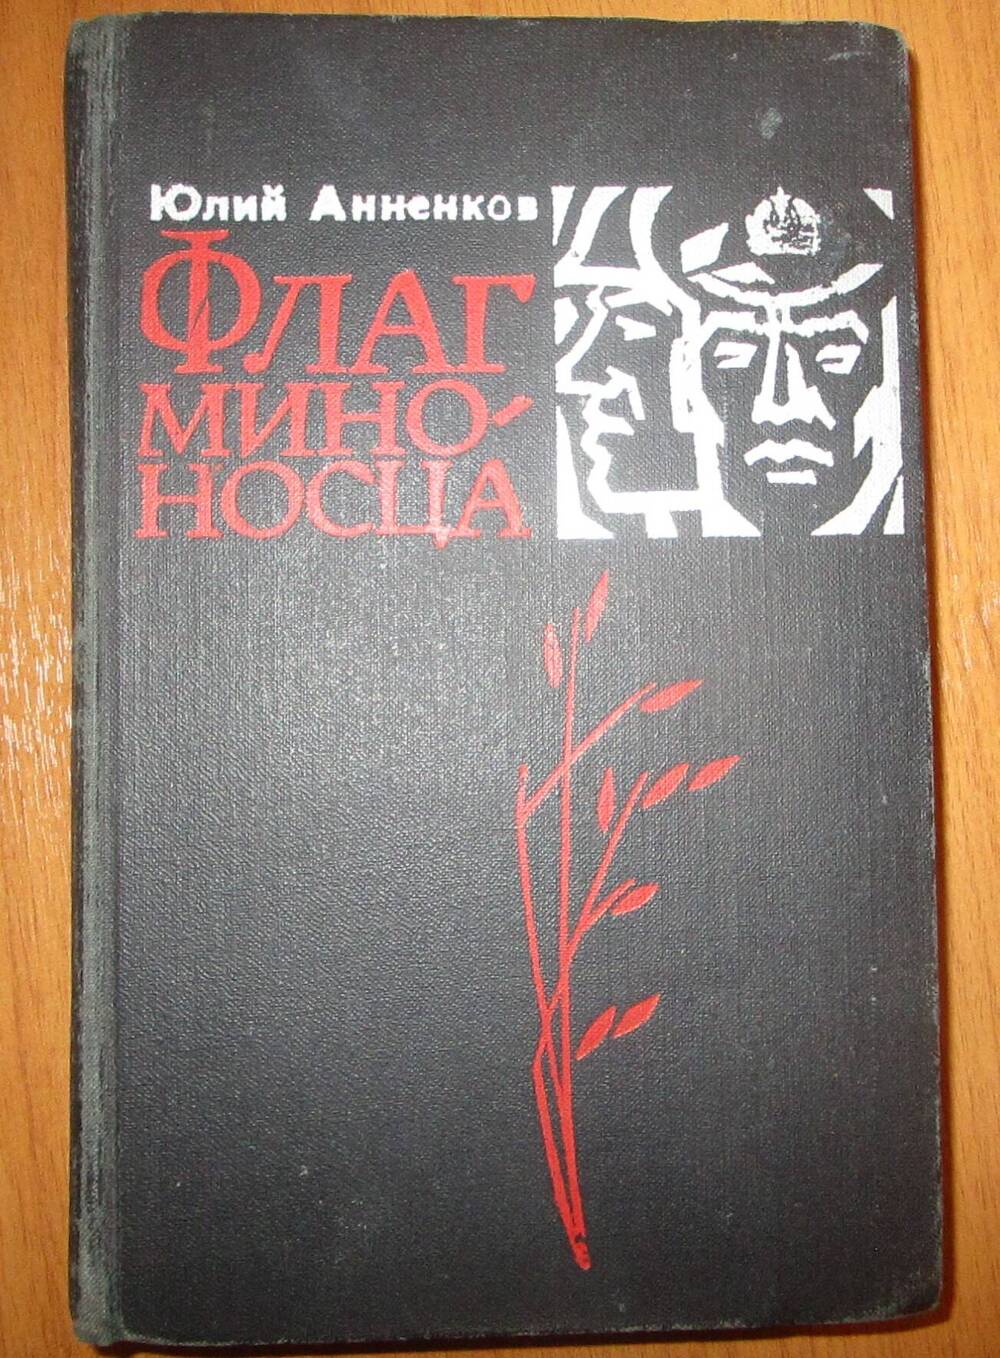 Книга Флаг миноносца. Автор Ю.П. Анненков